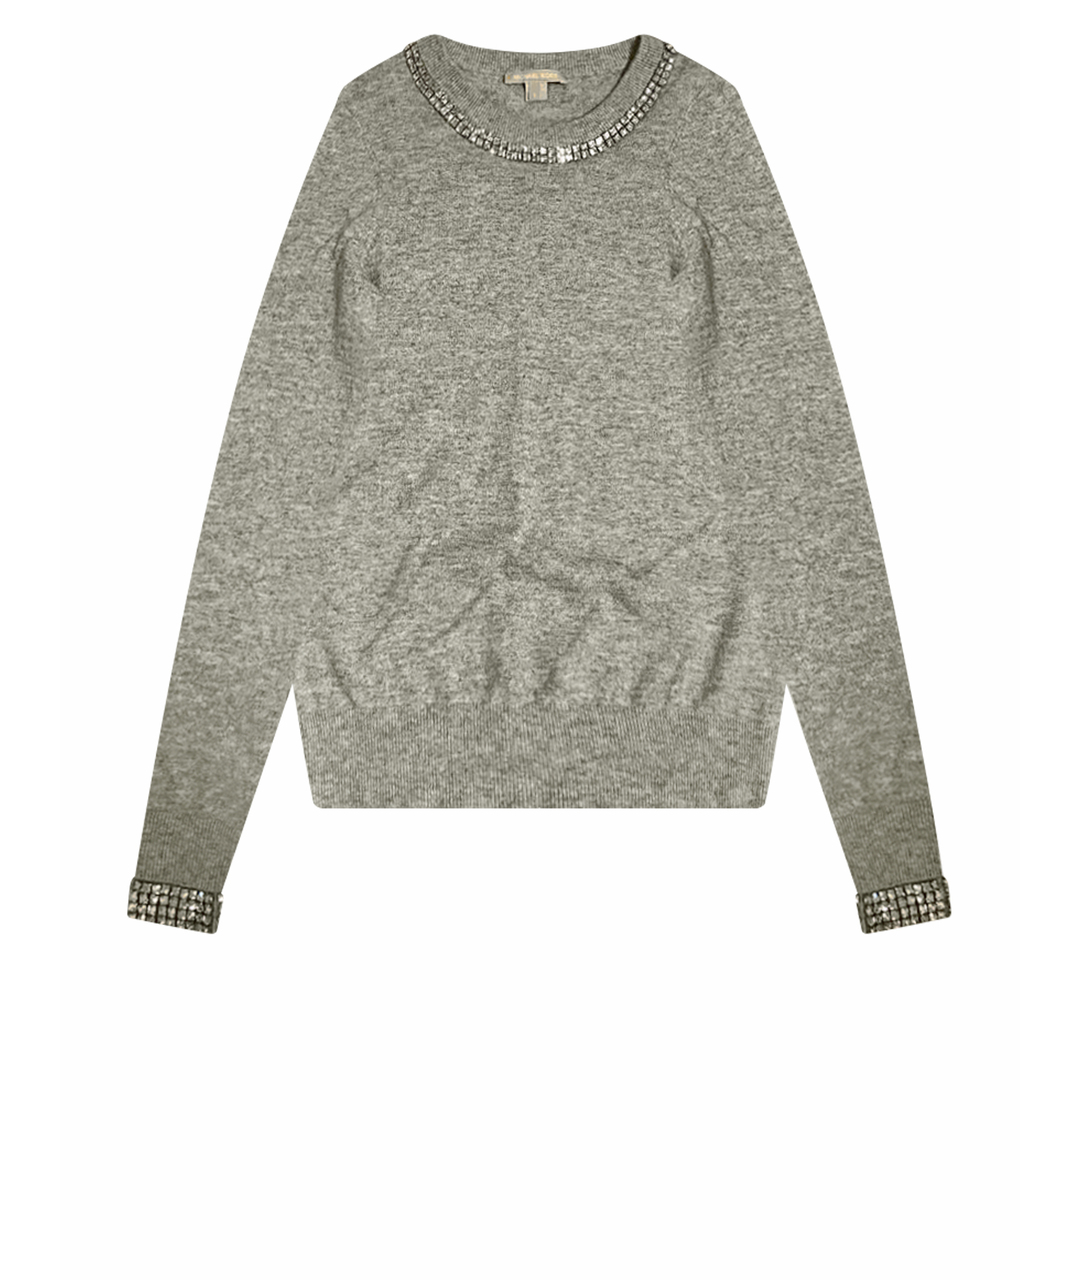 MICHAEL KORS Серый кашемировый джемпер / свитер, фото 1